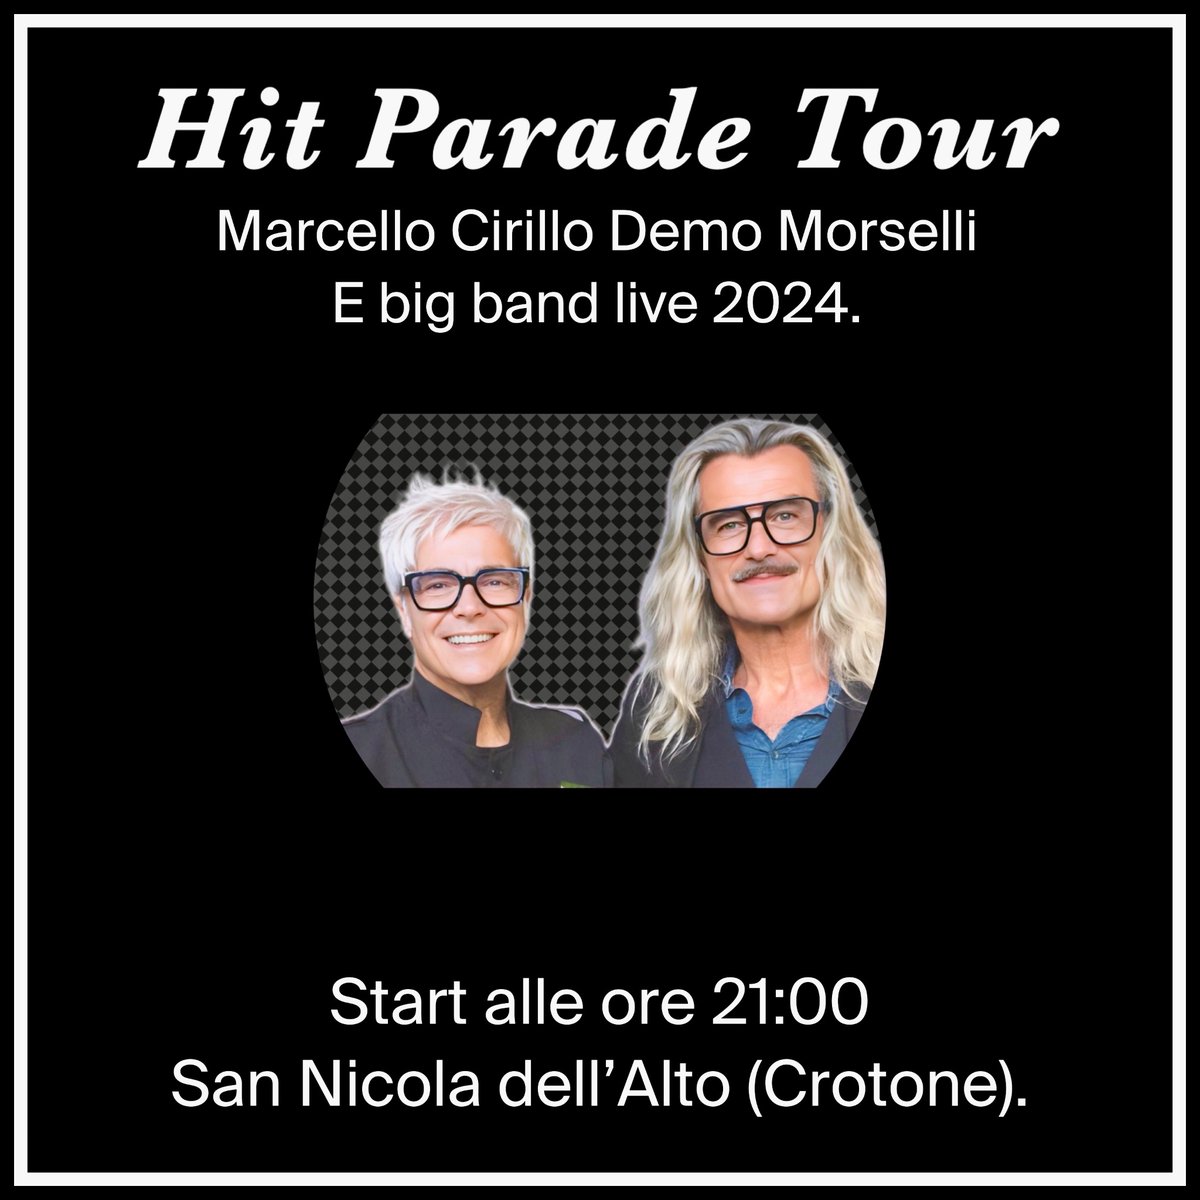 Domenica 5 maggio vi aspettiamo alle ore 21:00 a San Nicola dell'Alto (Crotone)! @marcelloCirillo @DemoMorselli @cirillofanpage #hitparadetour